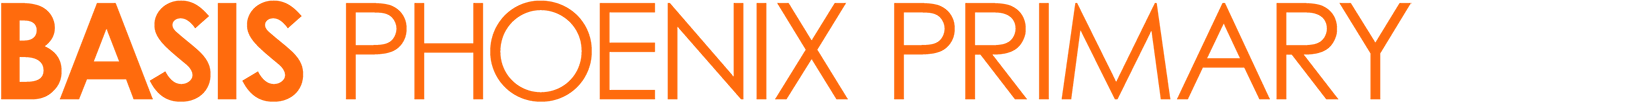 BASIS Phoenix Primary text logo